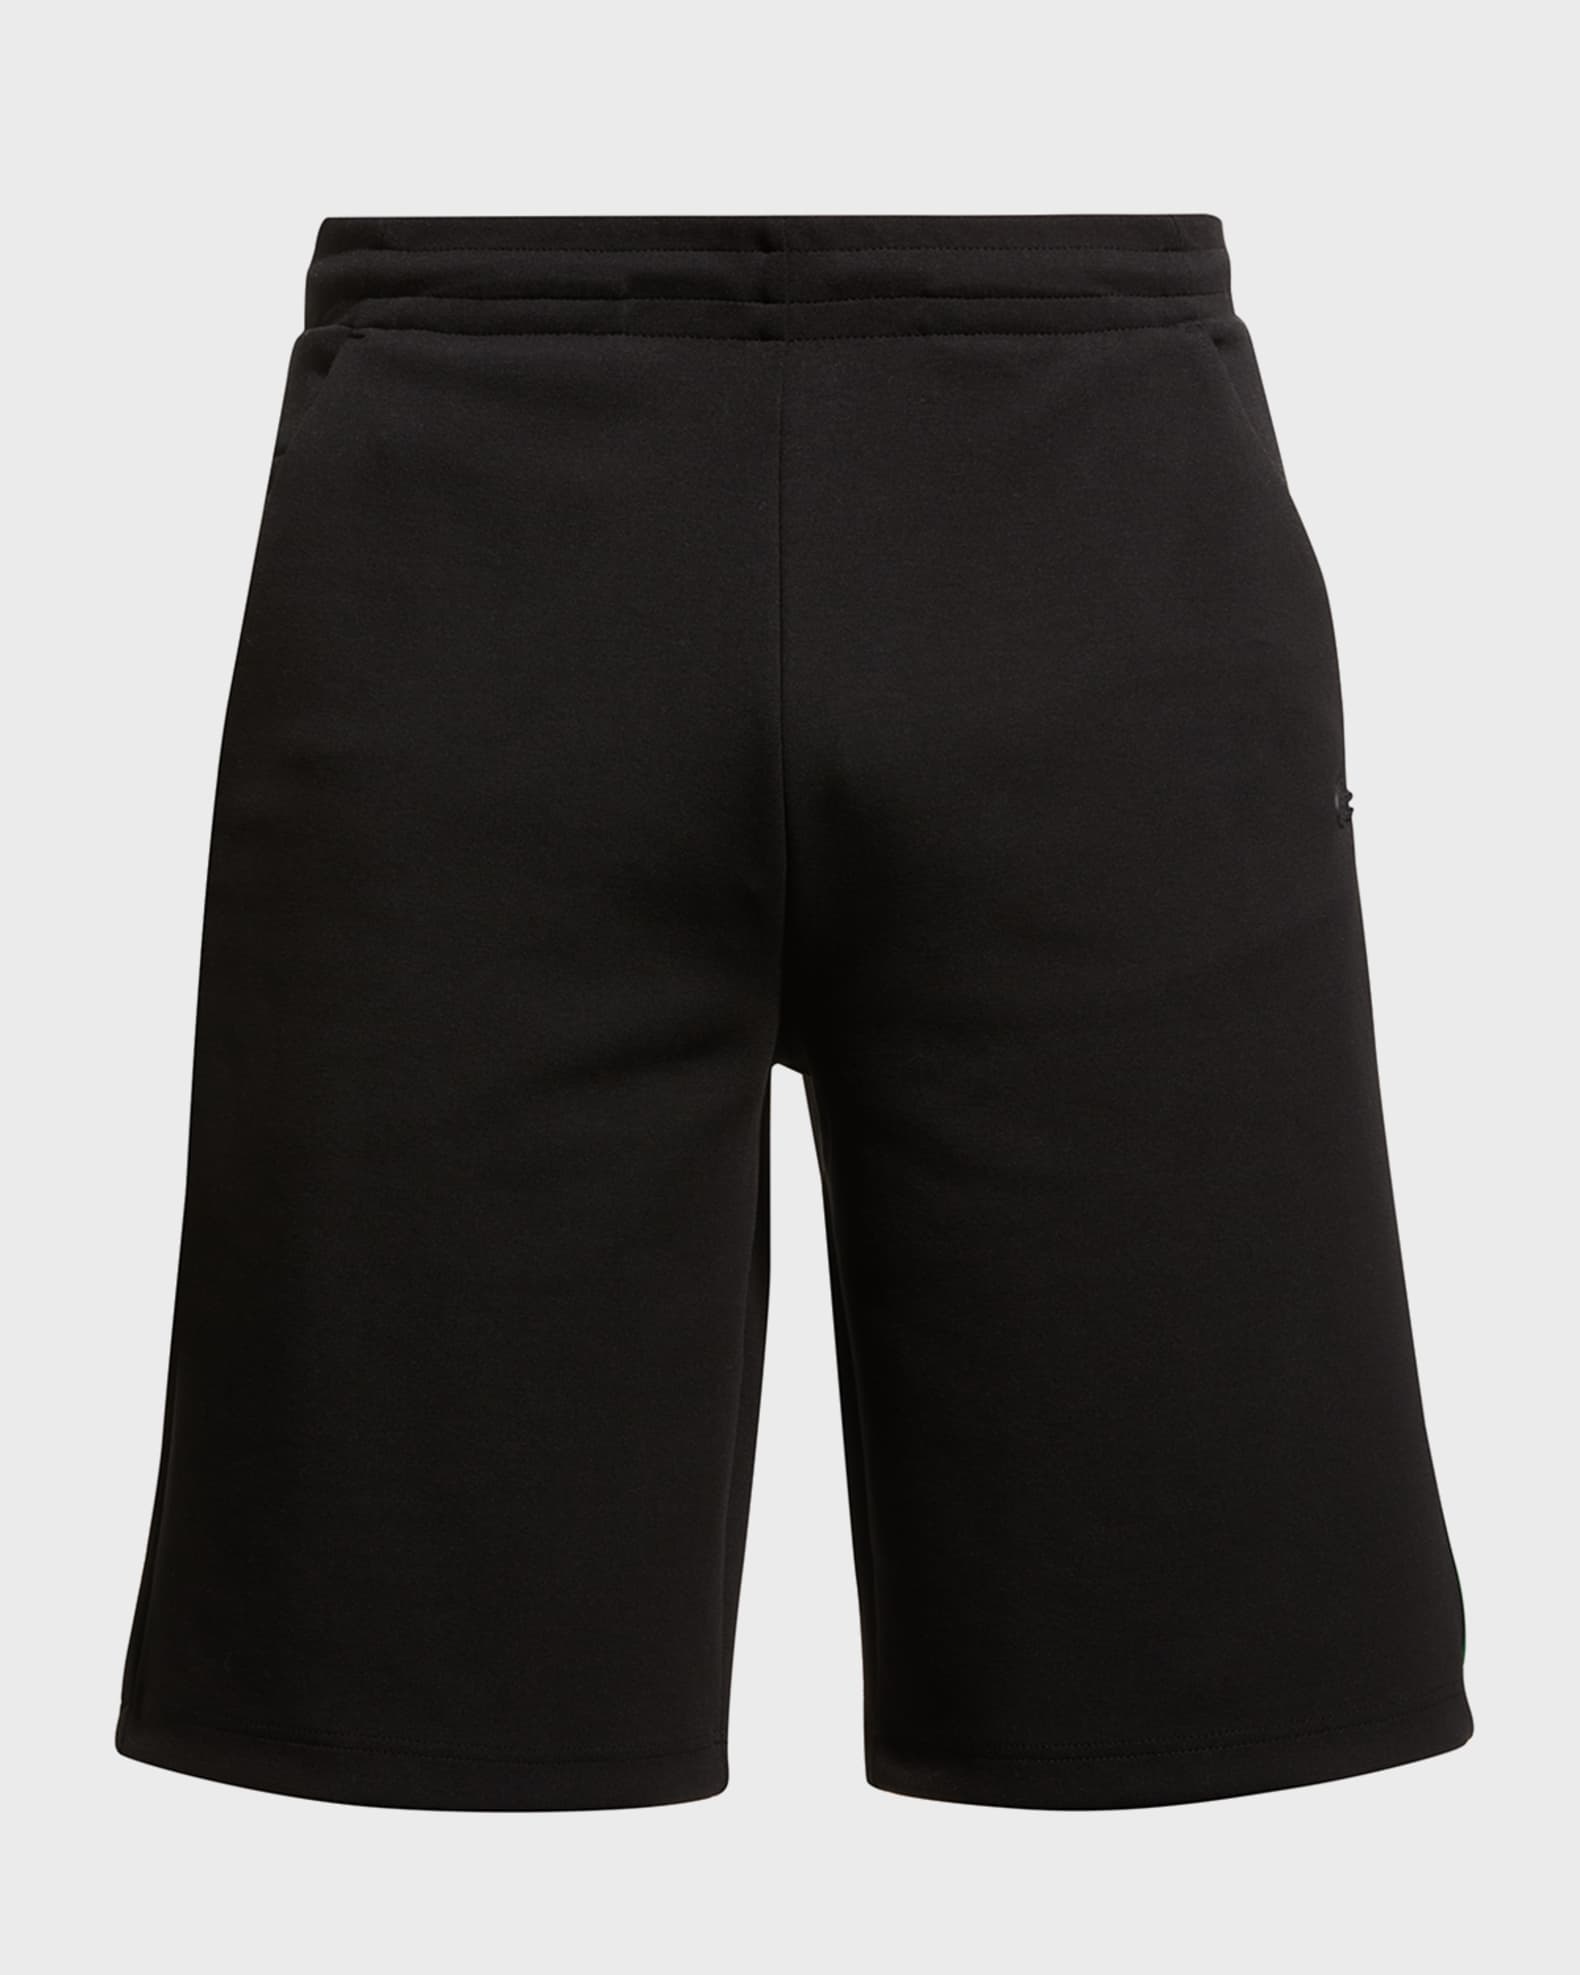 Lacoste Men's Cotton-Stretch Shorts | Neiman Marcus